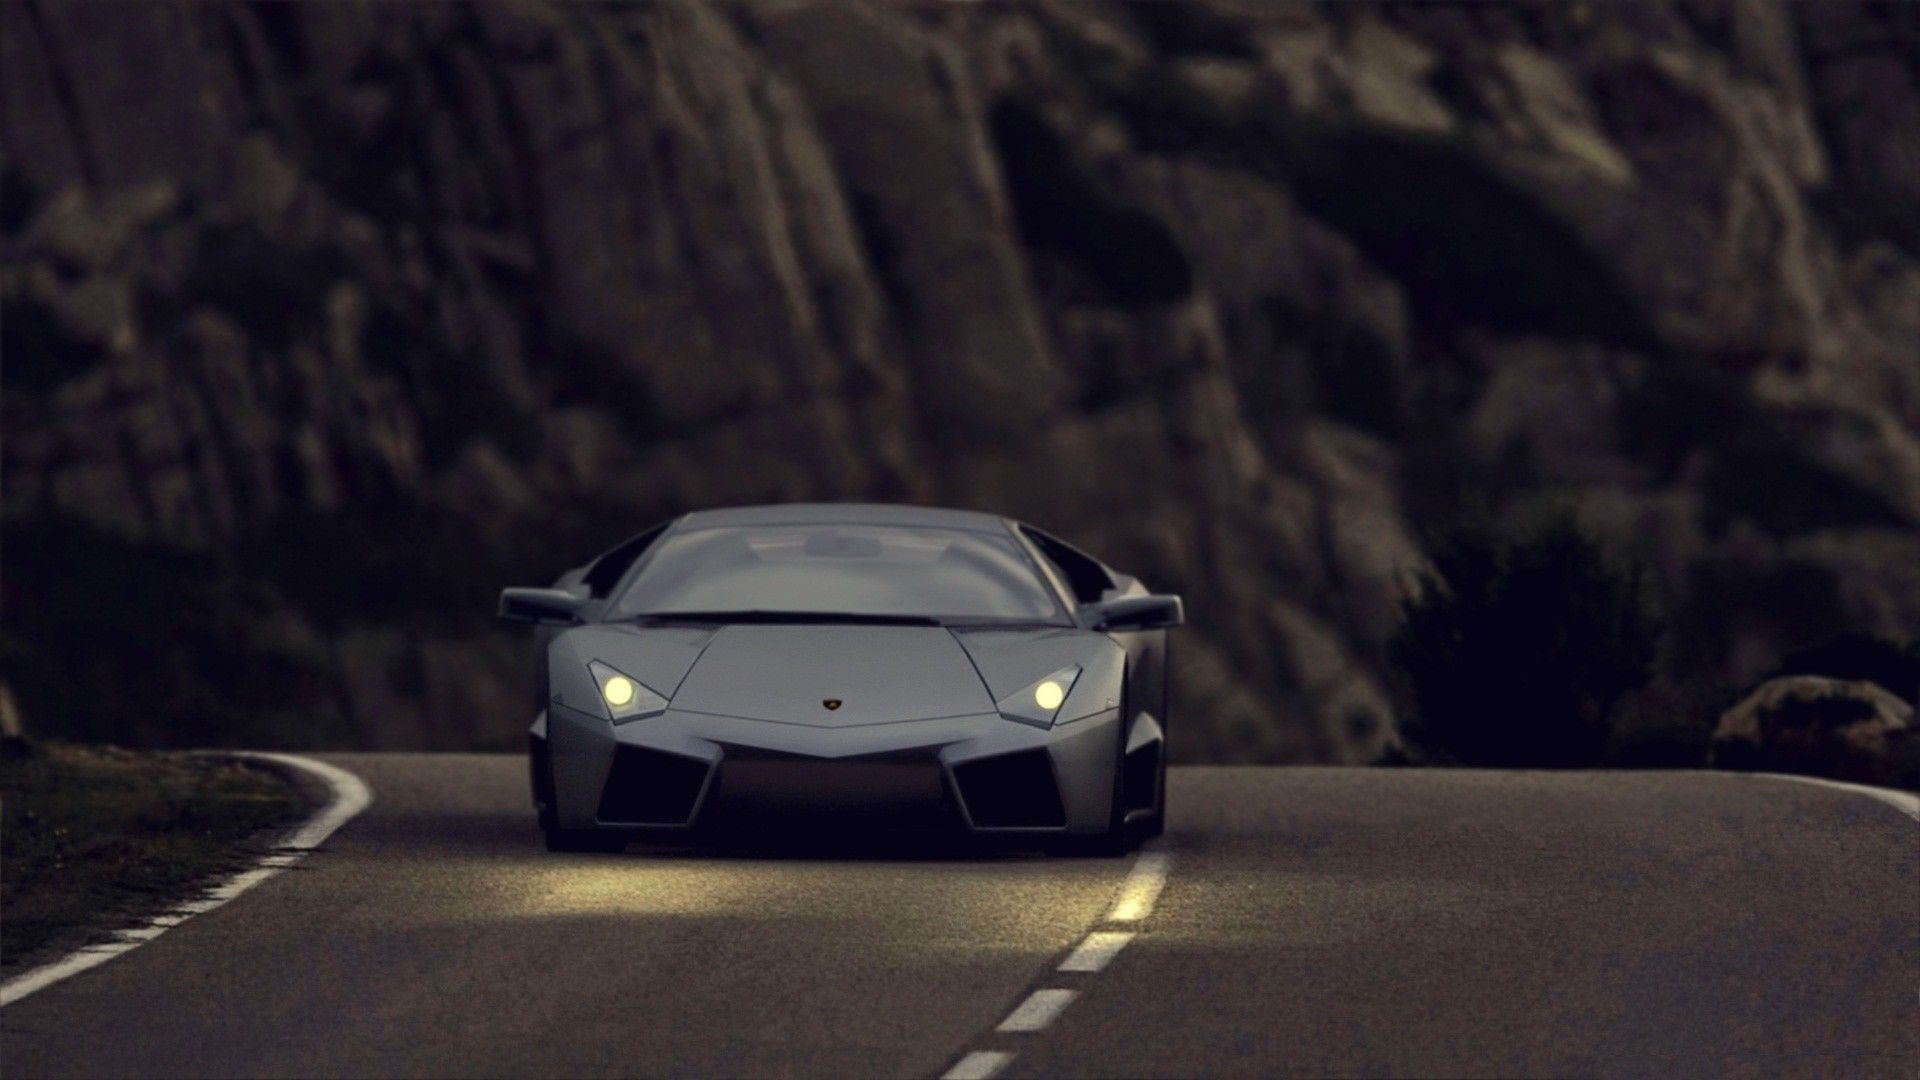 Lamborghini Reventon On The Streets HD Wallpaper FullHDwpp